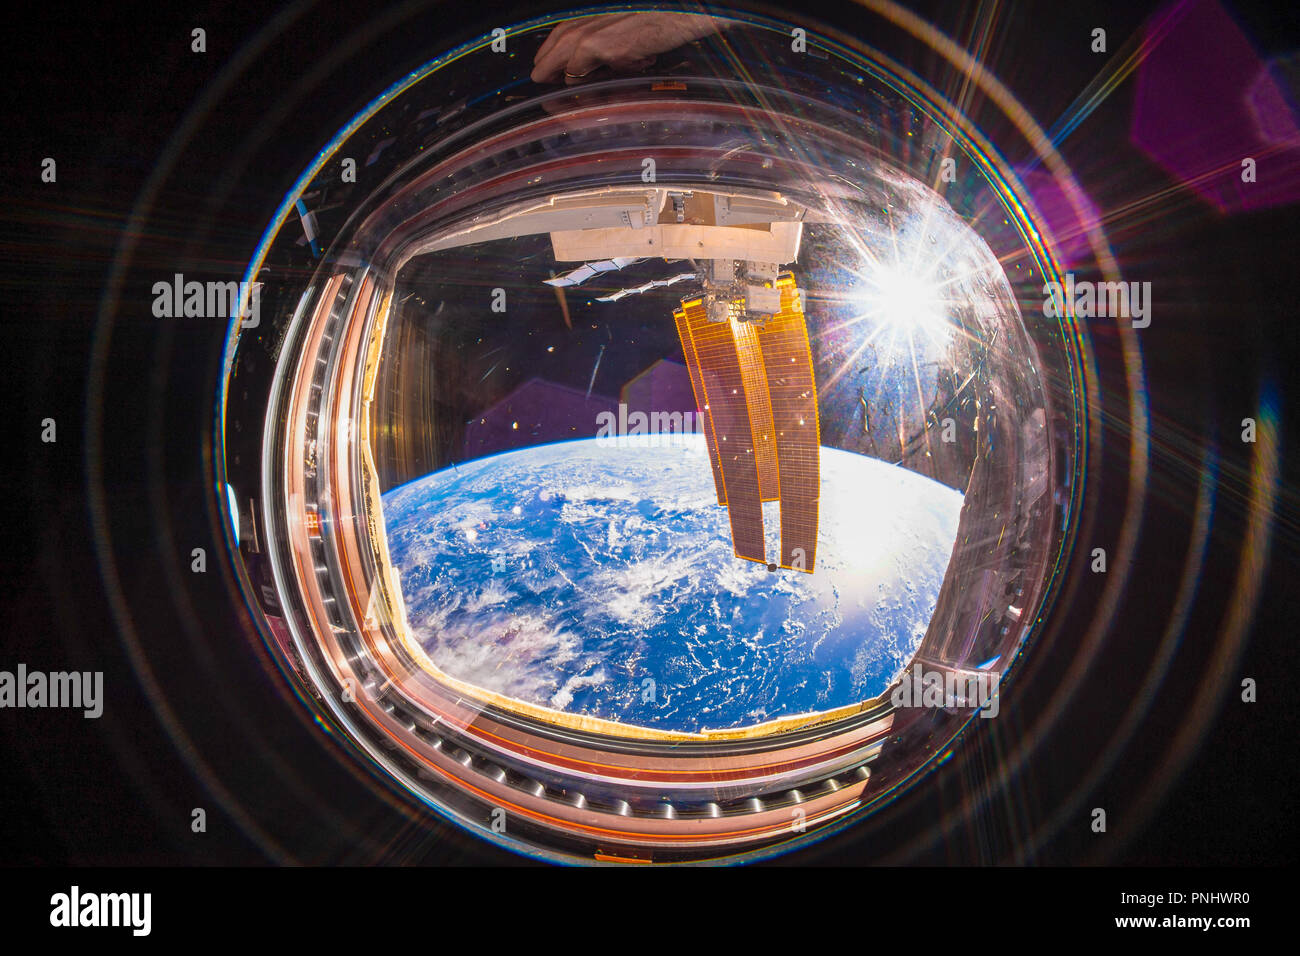 La belle planète Terre est vue de l'intérieur de la Station spatiale internationale (ISS). Vue grand angle avec le soleil sur l'image. Banque D'Images